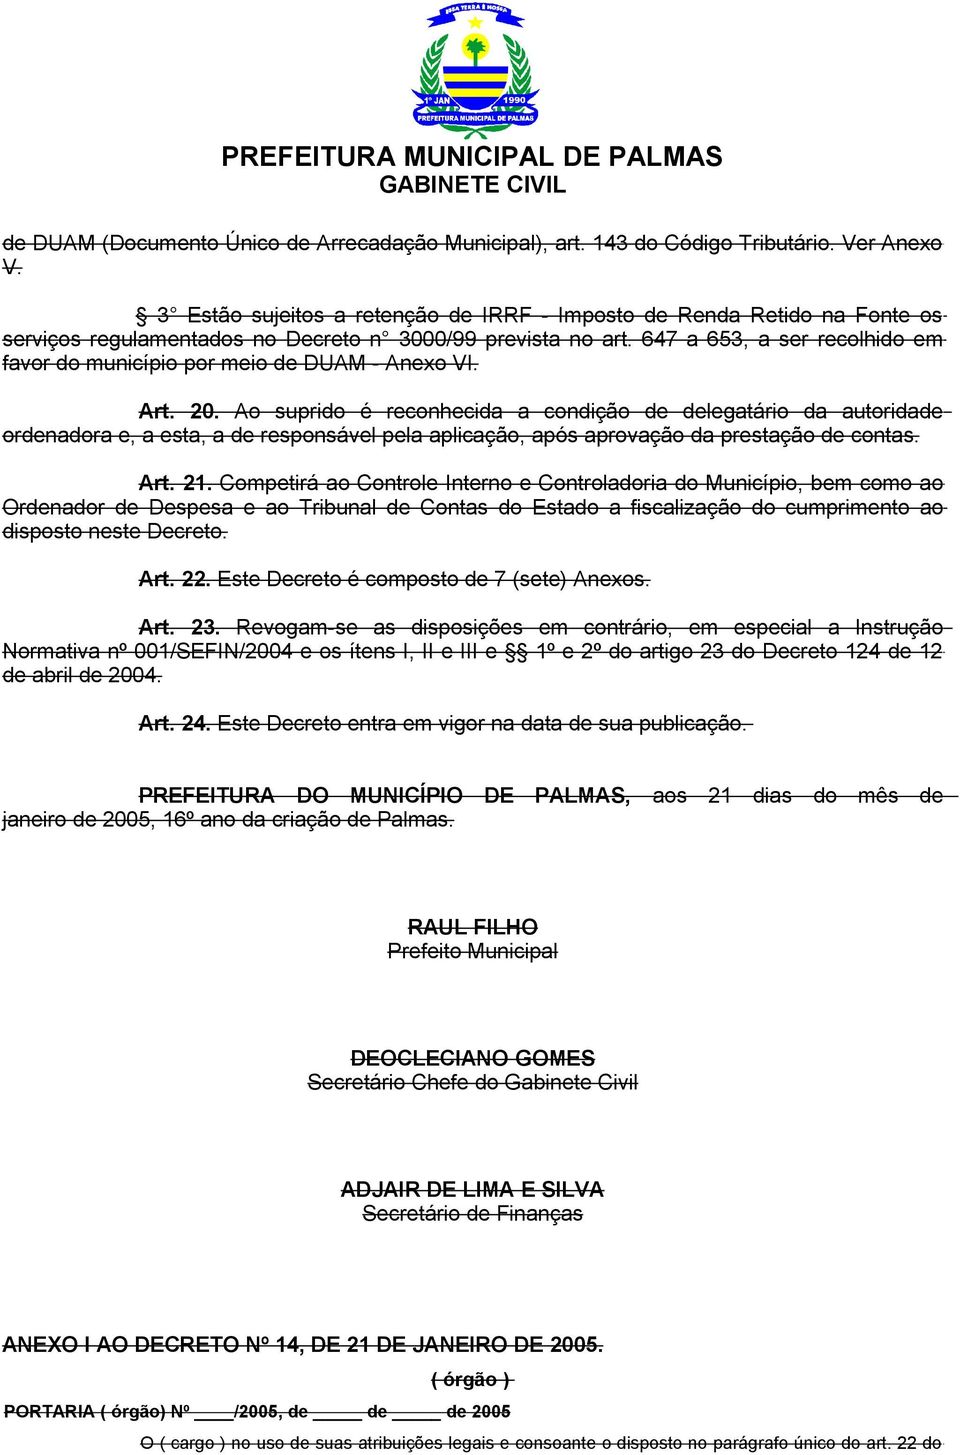 647 a 65, a ser recolhido em favor do município por meio de DUAM - Anexo VI. Art. 20.